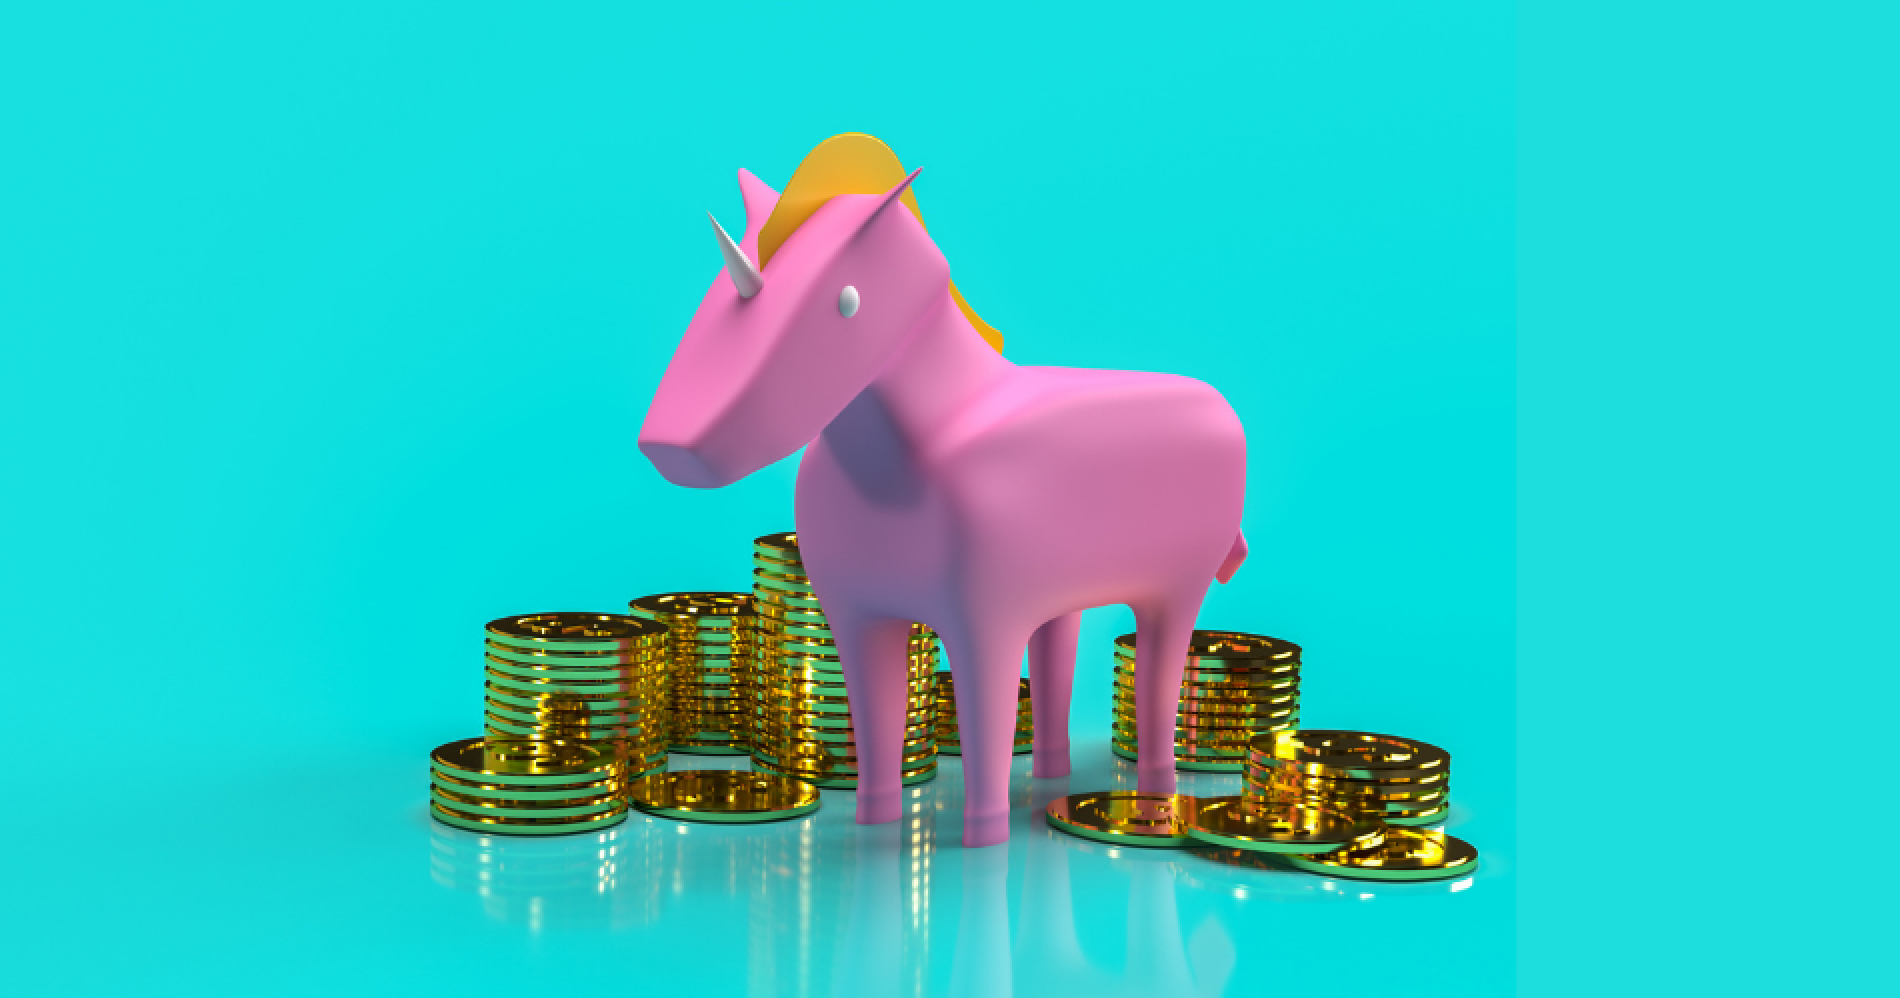 Perbedaan Istilah Unicorn, Decacorn, dan Hectocorn dalam Dunia Startup Illustration Web Bisnis Muda - Canva